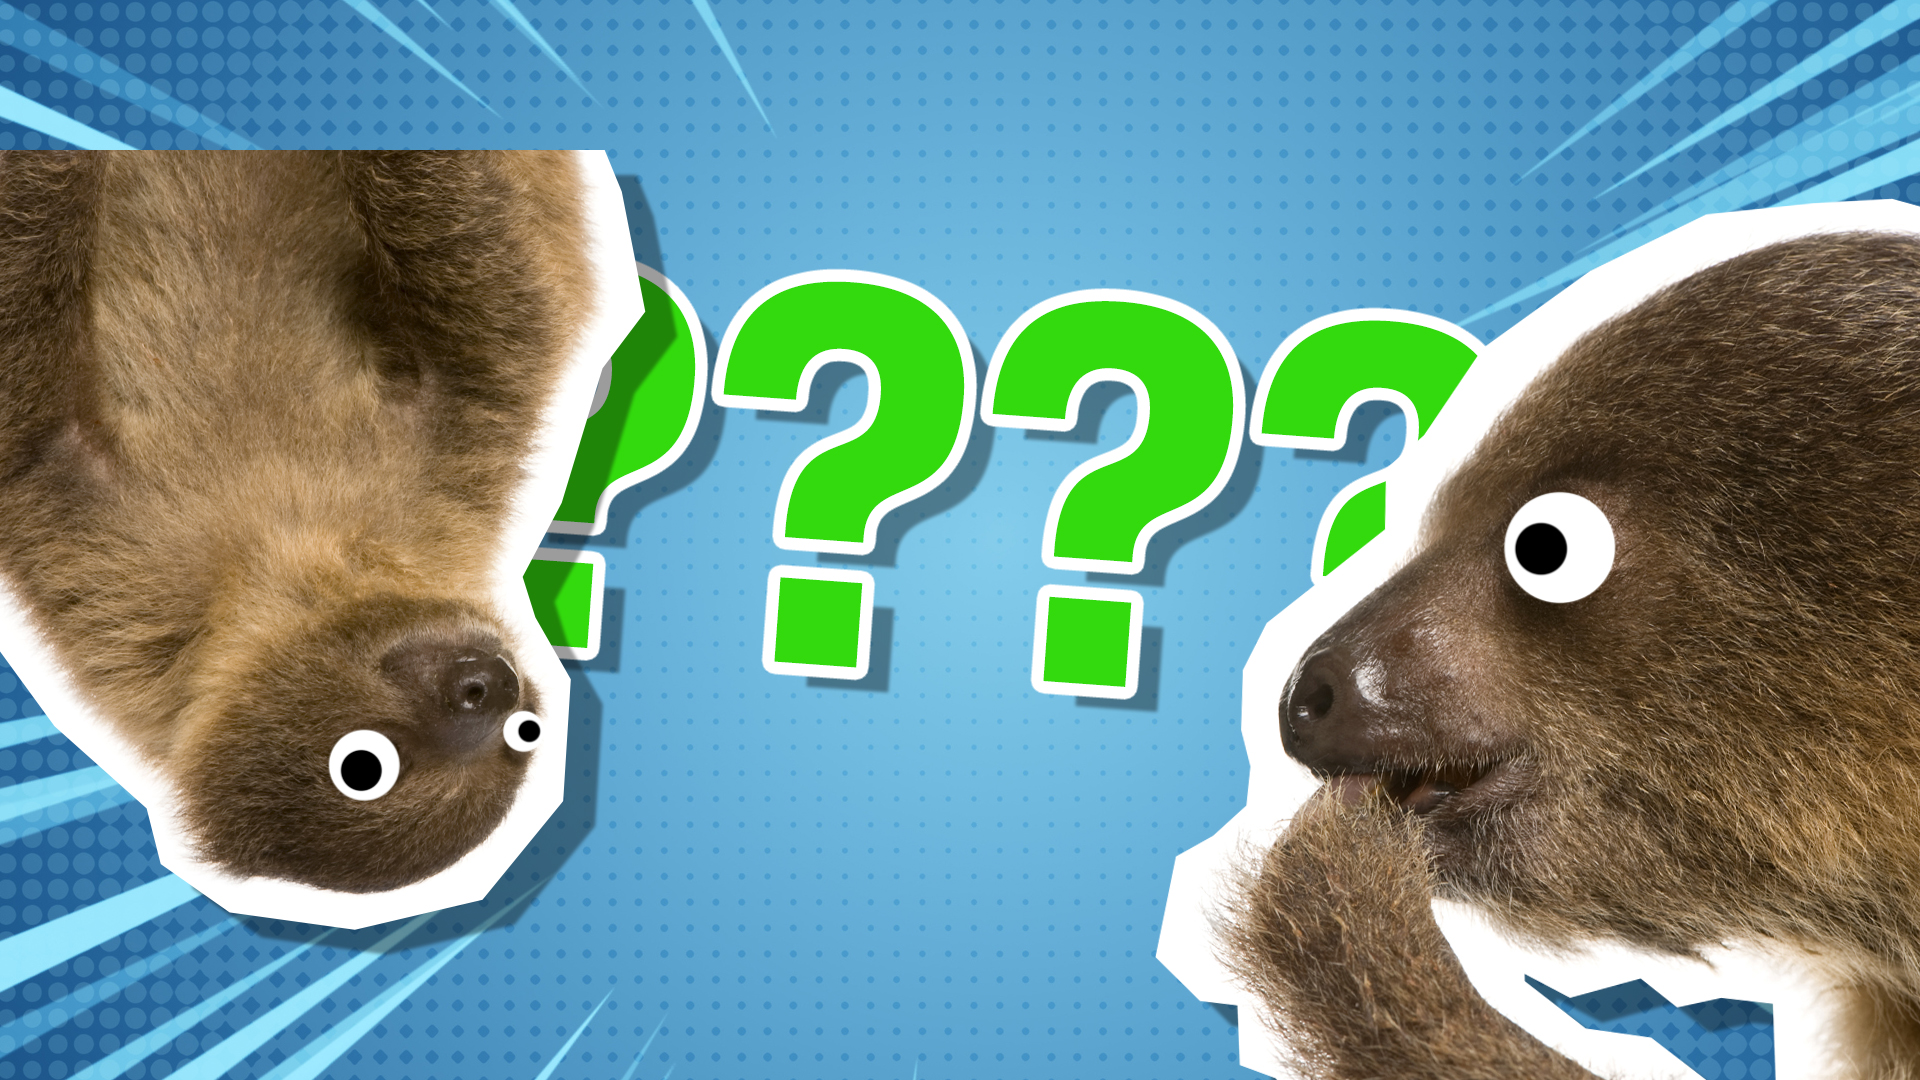 Sloth quiz